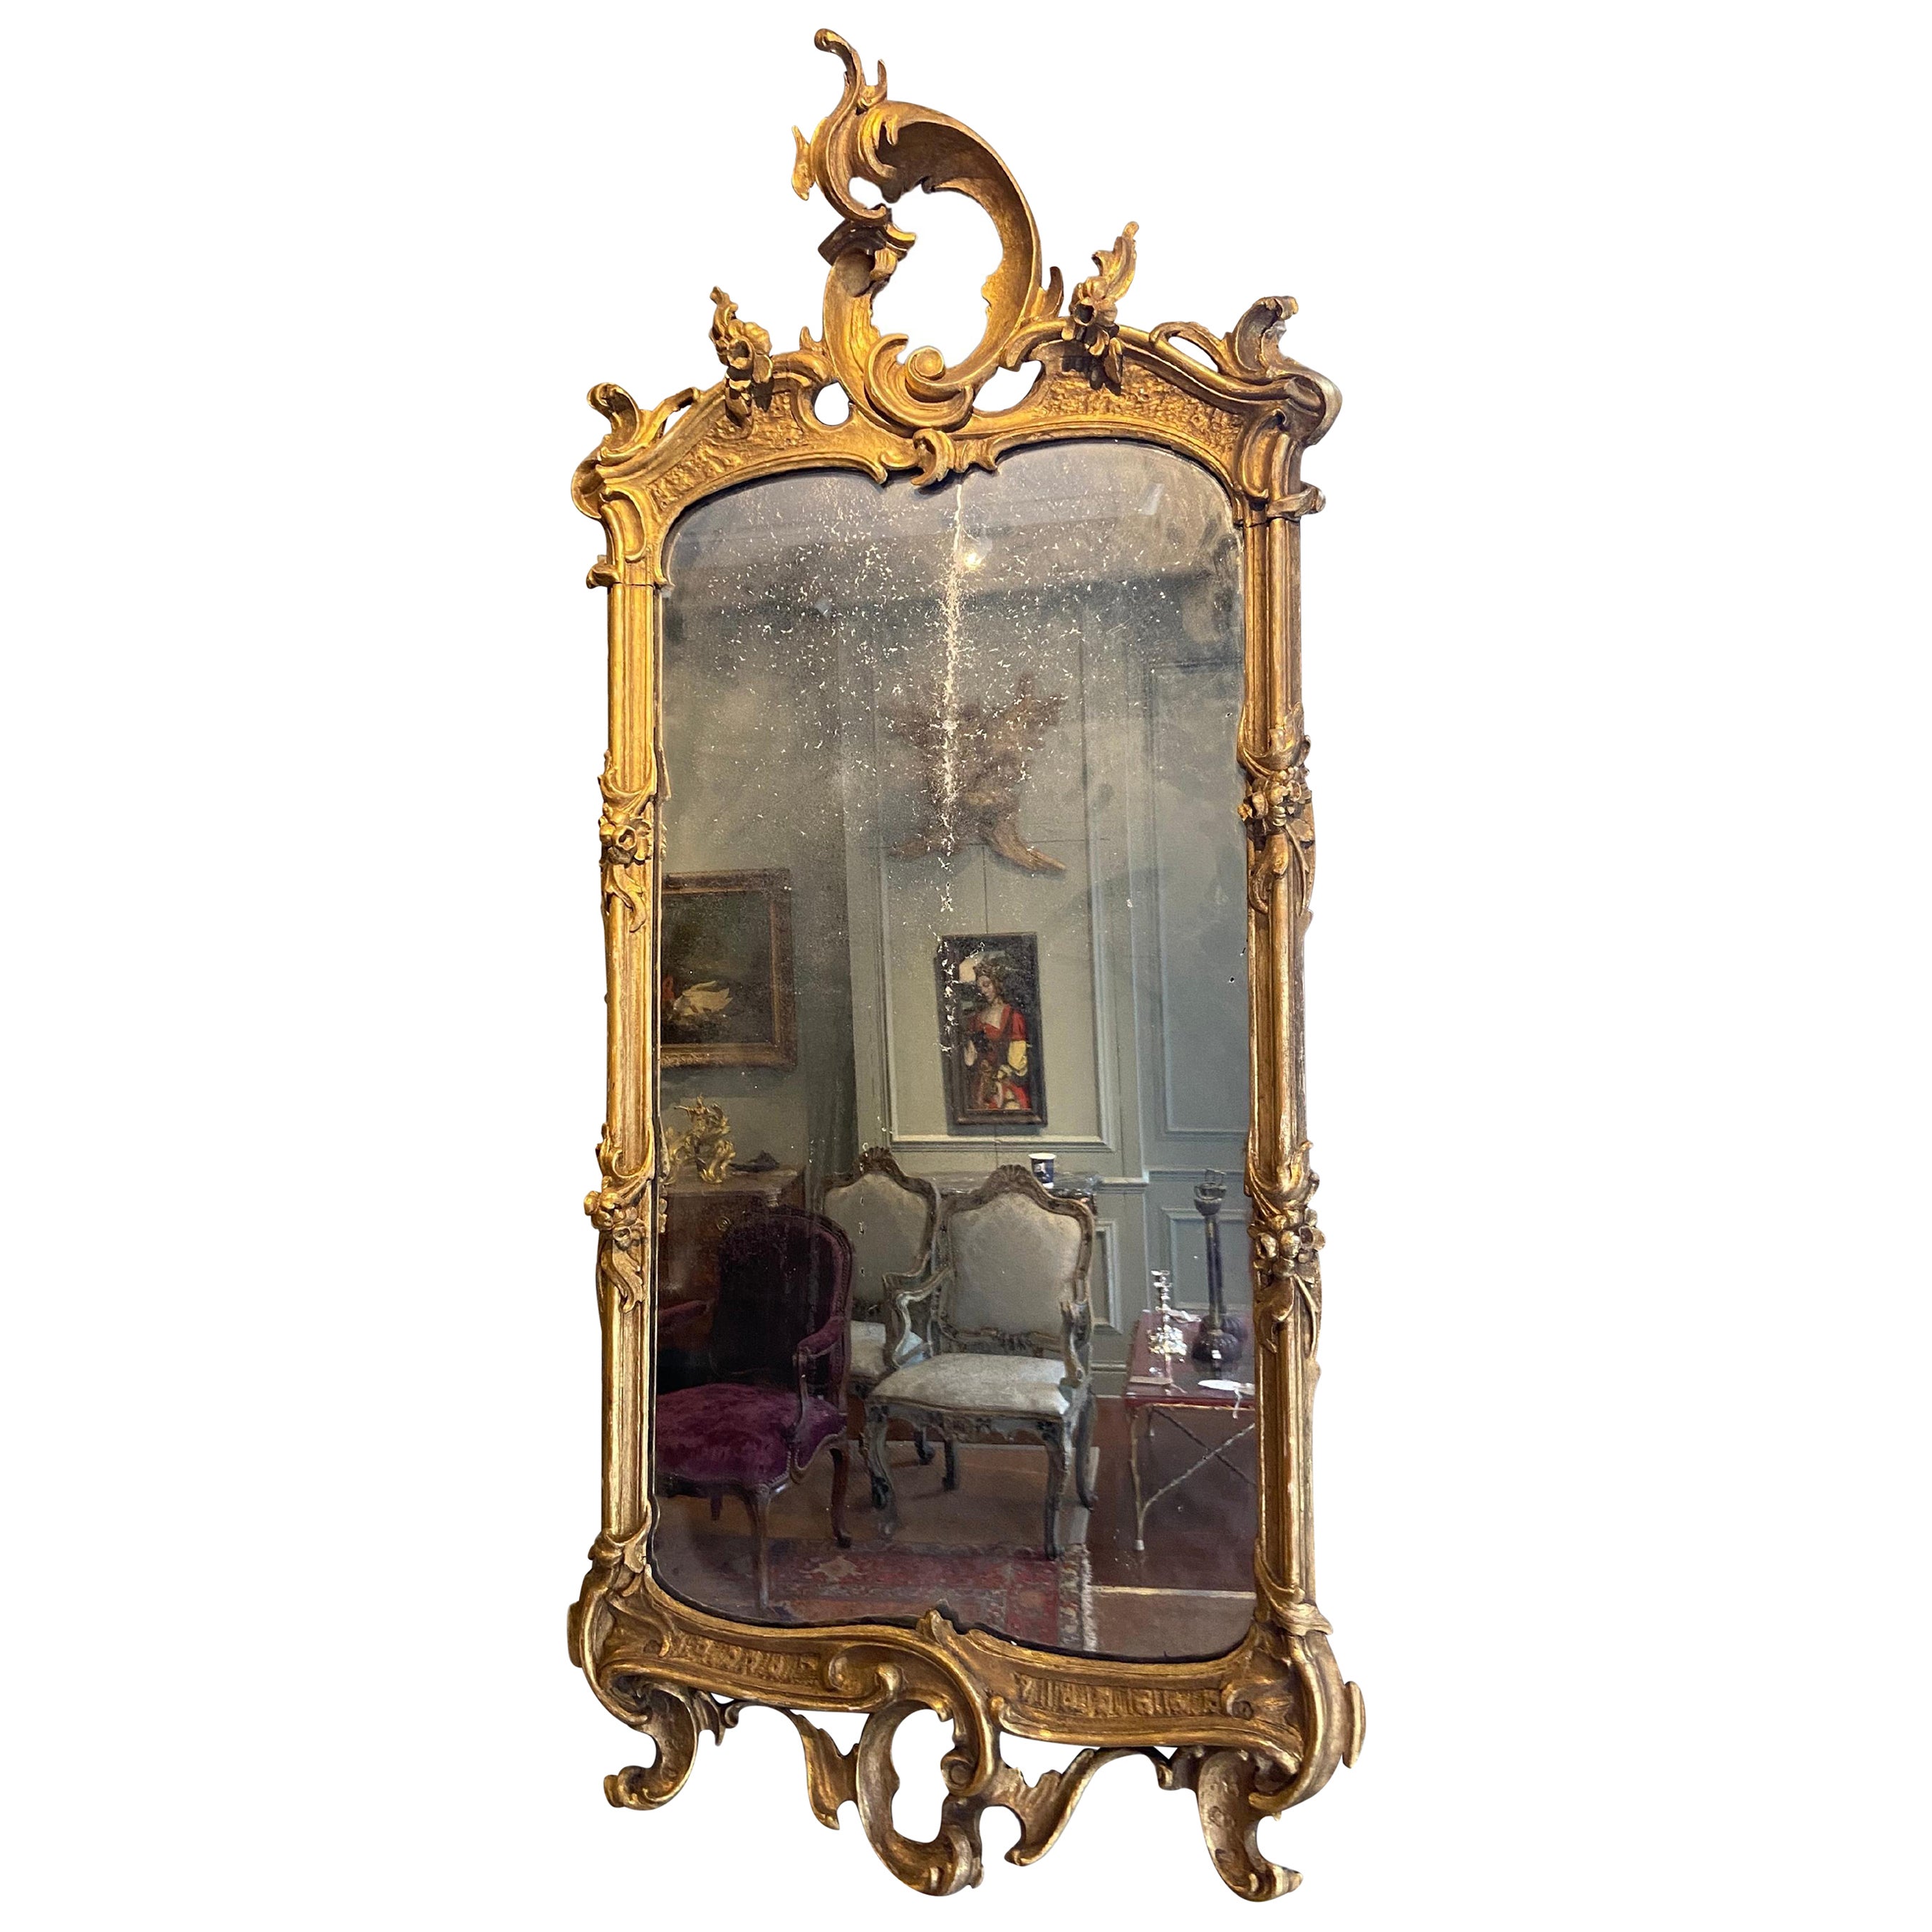 Norditalienischer vergoldeter Spiegel aus dem späten 18. Jahrhundert